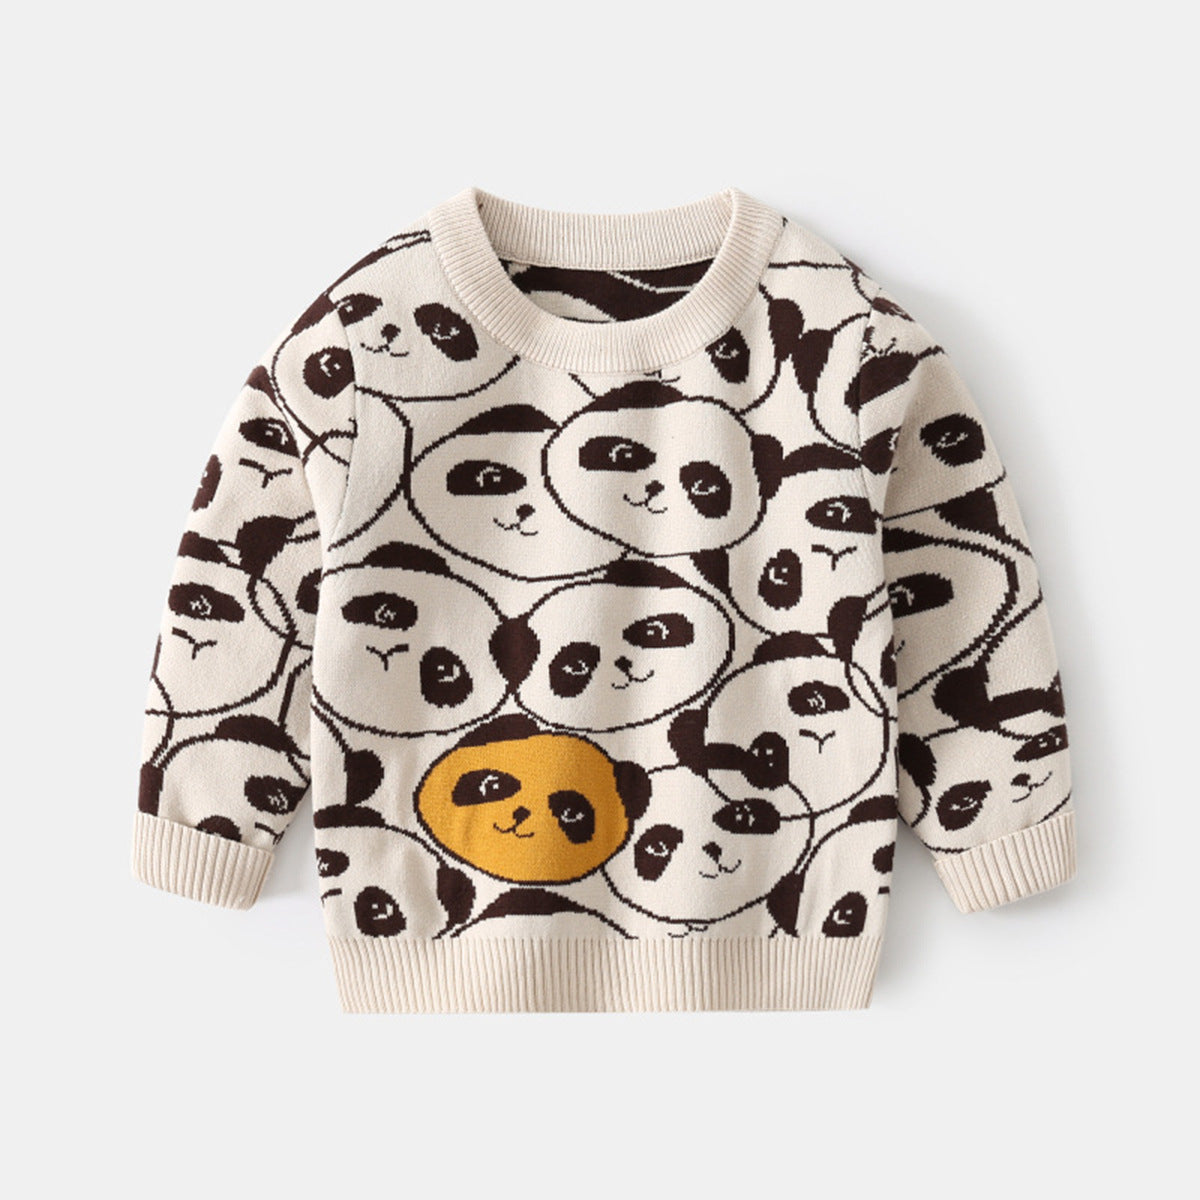 [513683] - Atasan Sweater Crewneck Lengan Panjang Import Anak Laki-Laki - Motif Panda Face